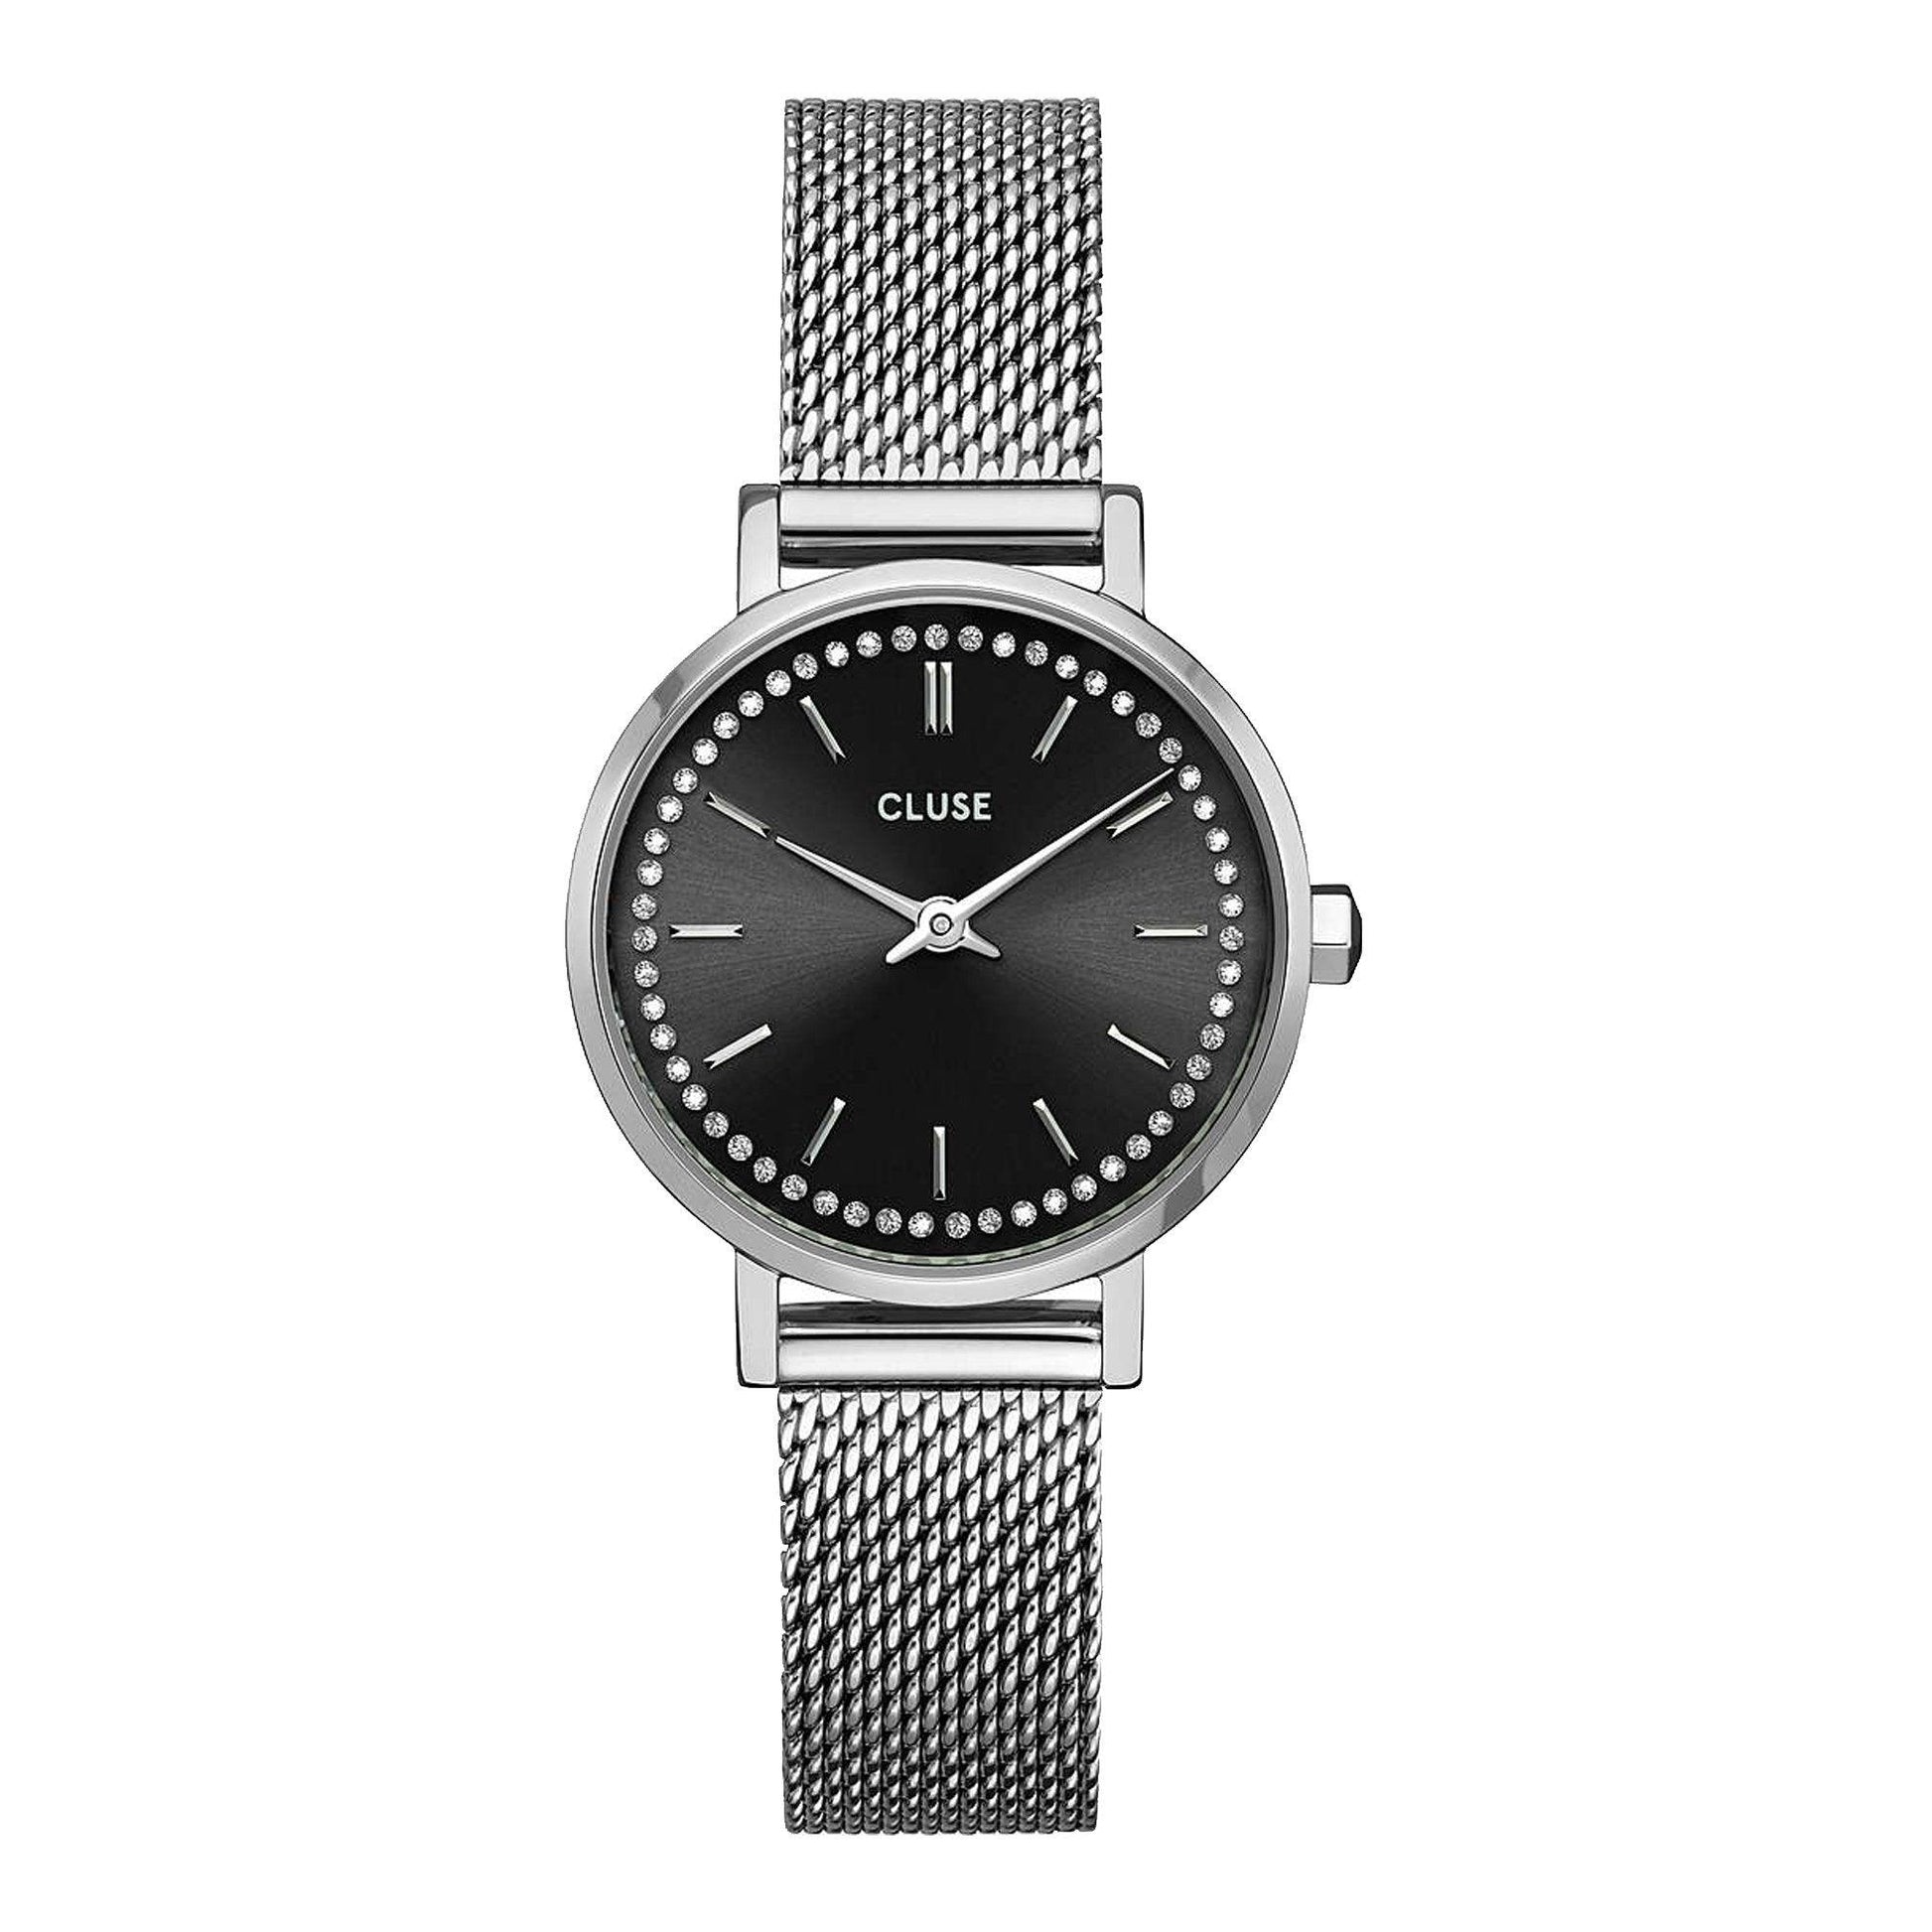 Cluse Boho Chic Petite CW10502 orologio donna al quarzo - Kechiq Concept Boutique